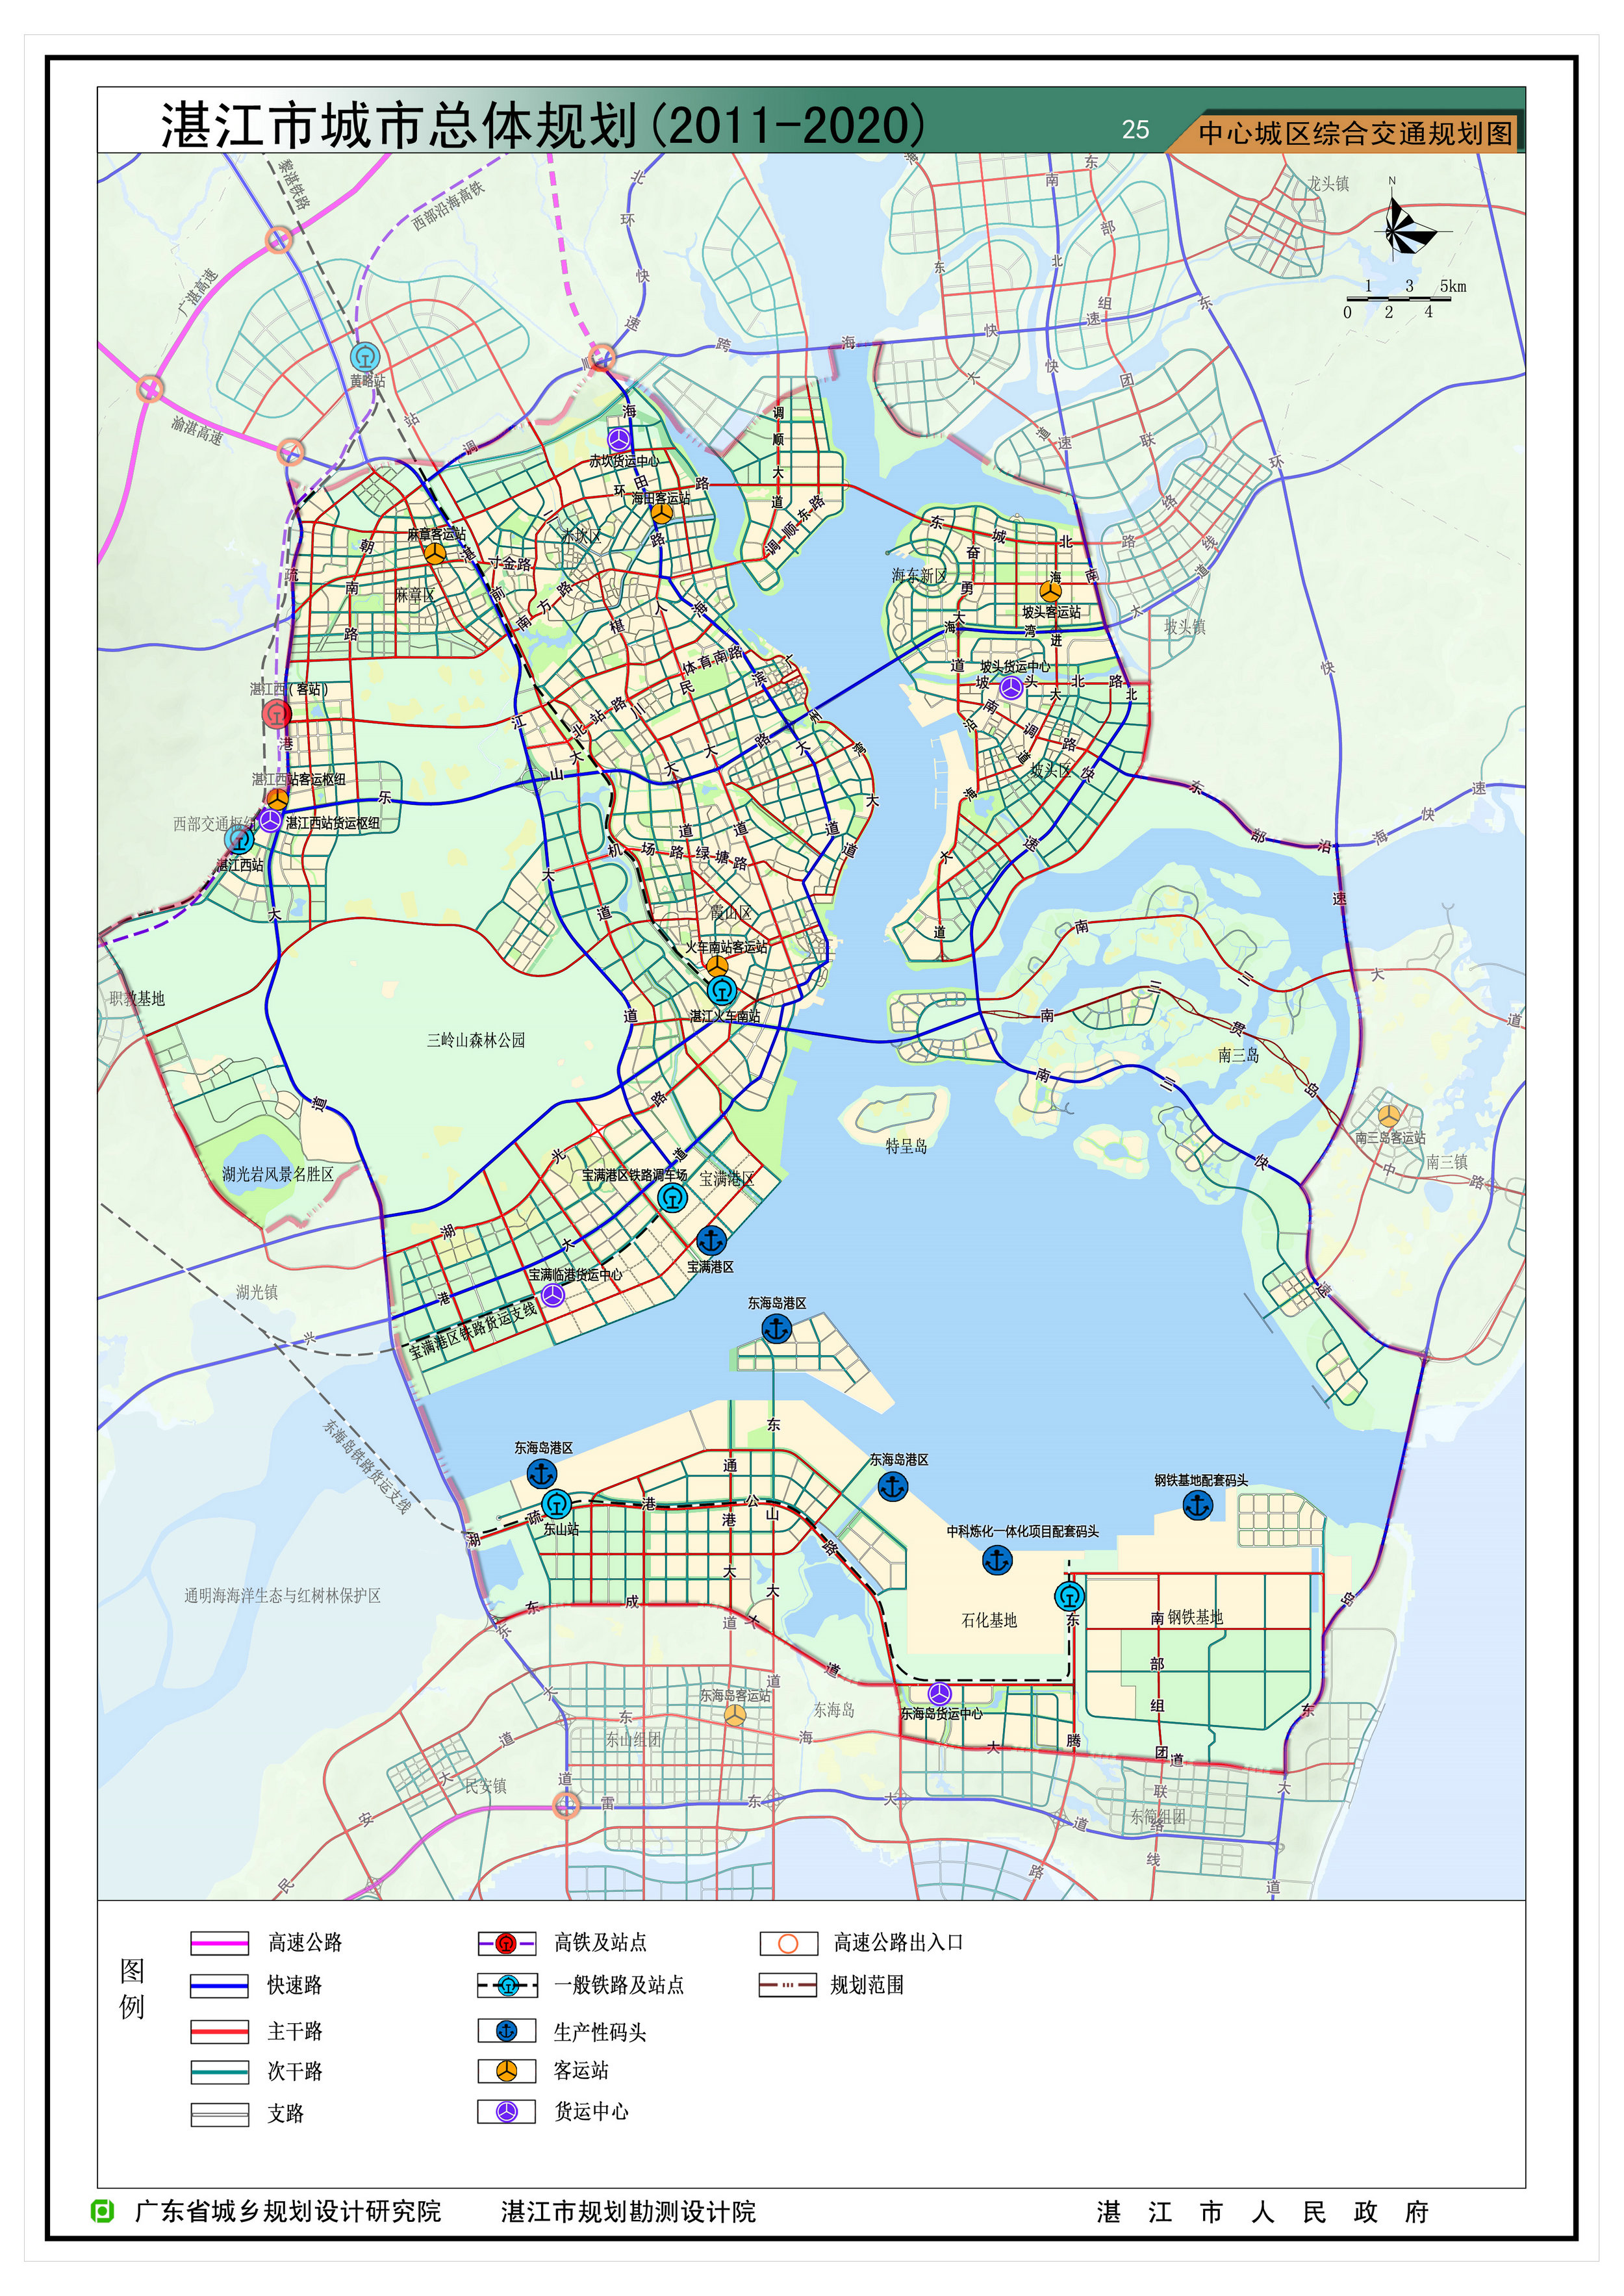 湛江市城市总体规划(2011-2020年)批前公示